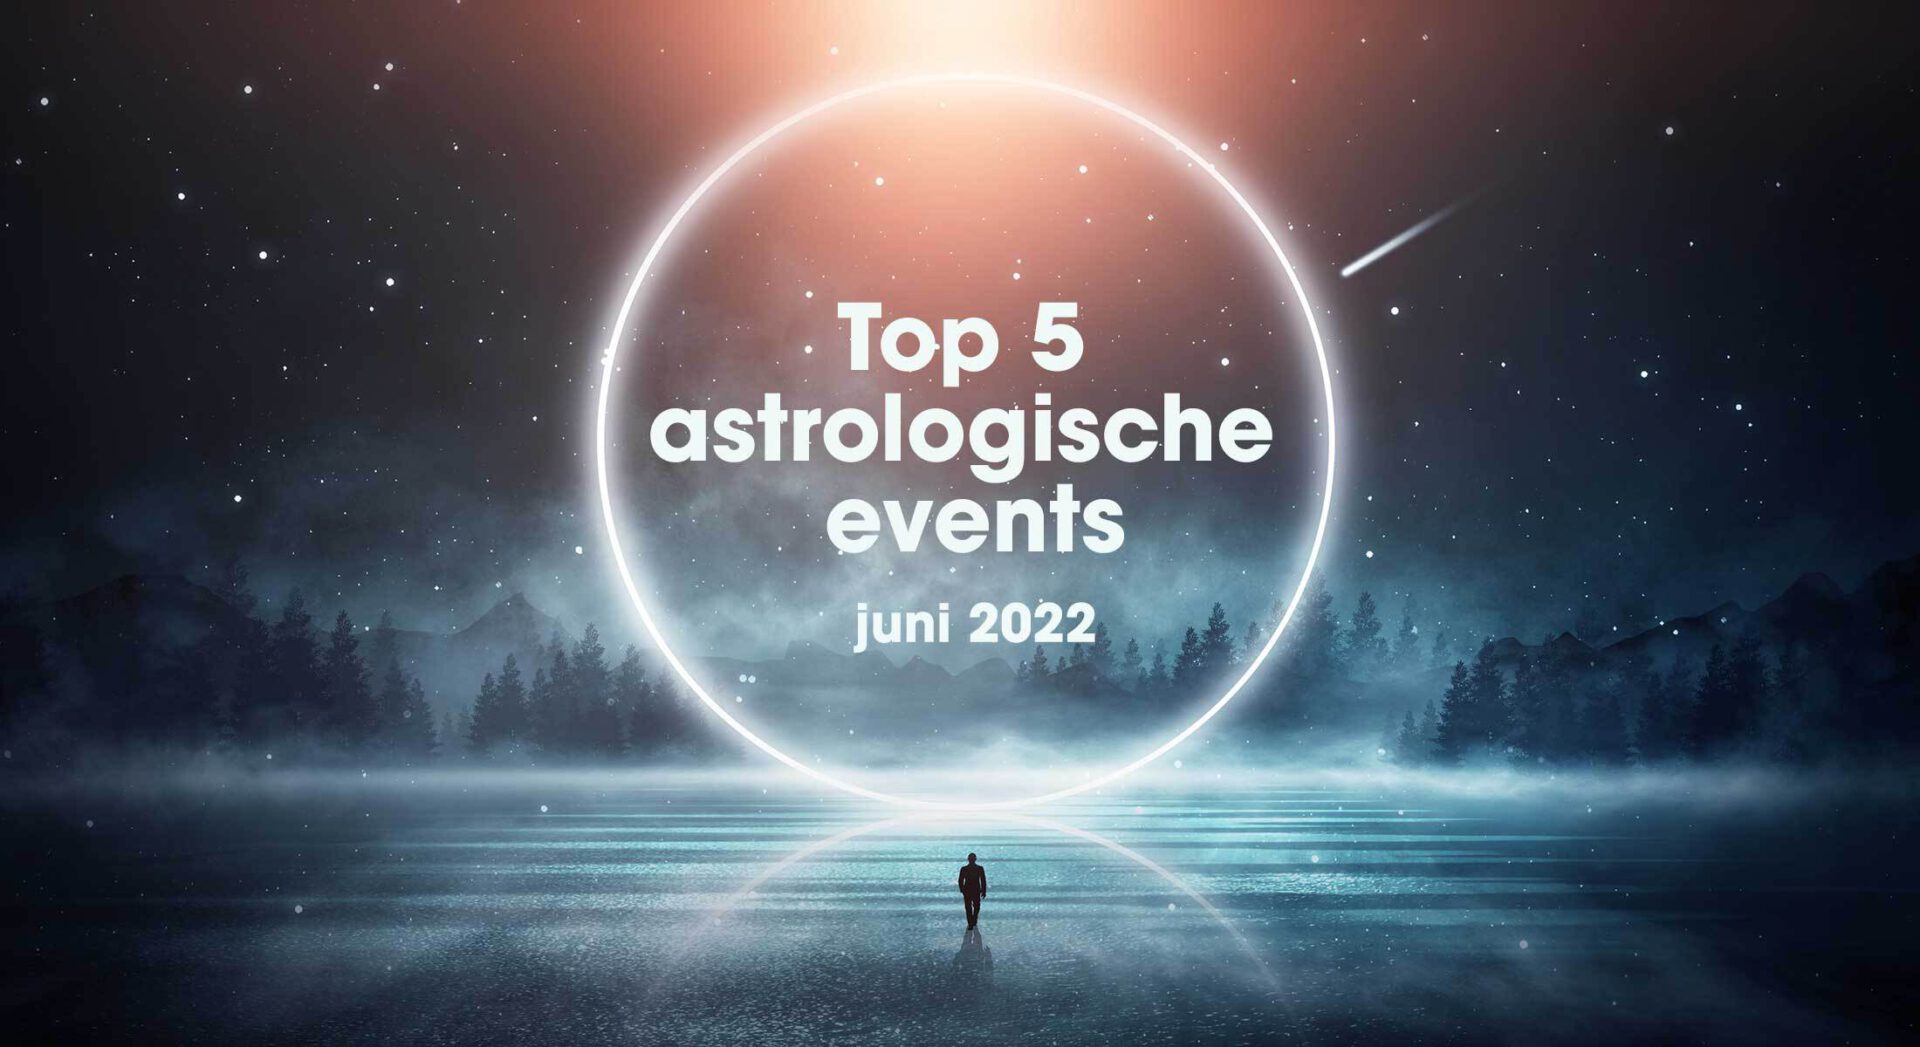 Top 5 astrologische transits en events in juni 2022